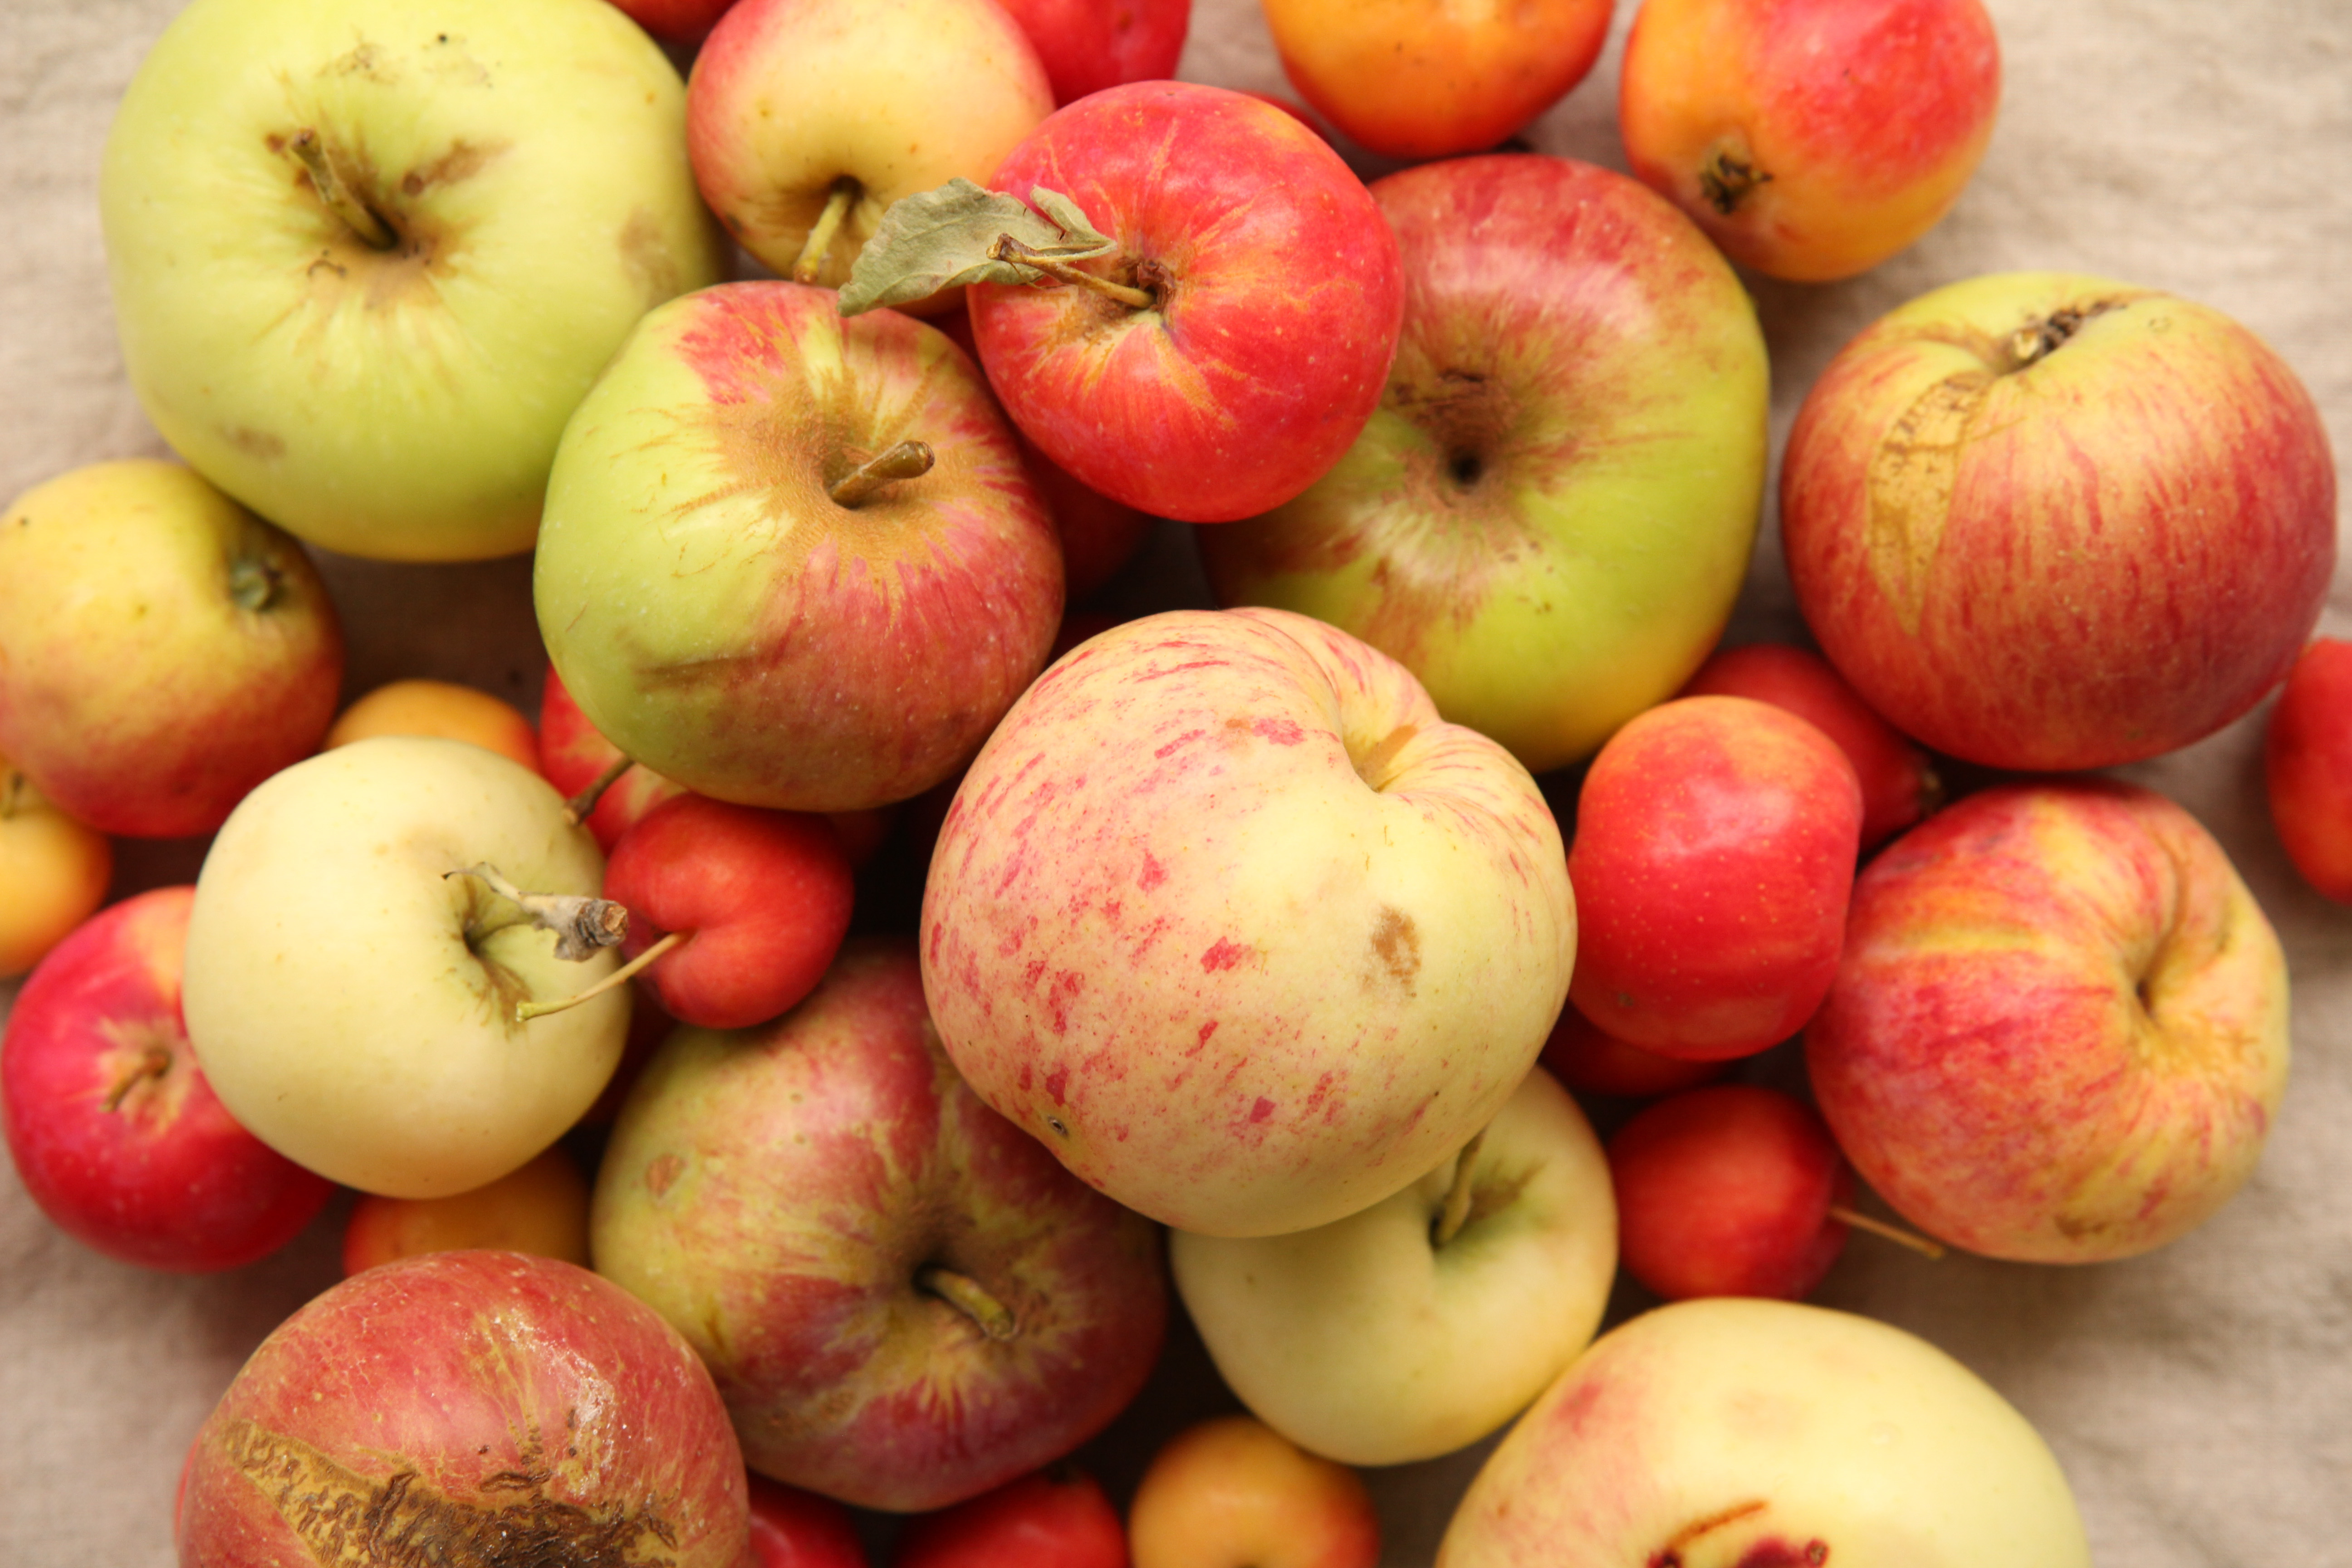 Pile of heritage apples including duchess transcendent wealthy mcinstosh martha